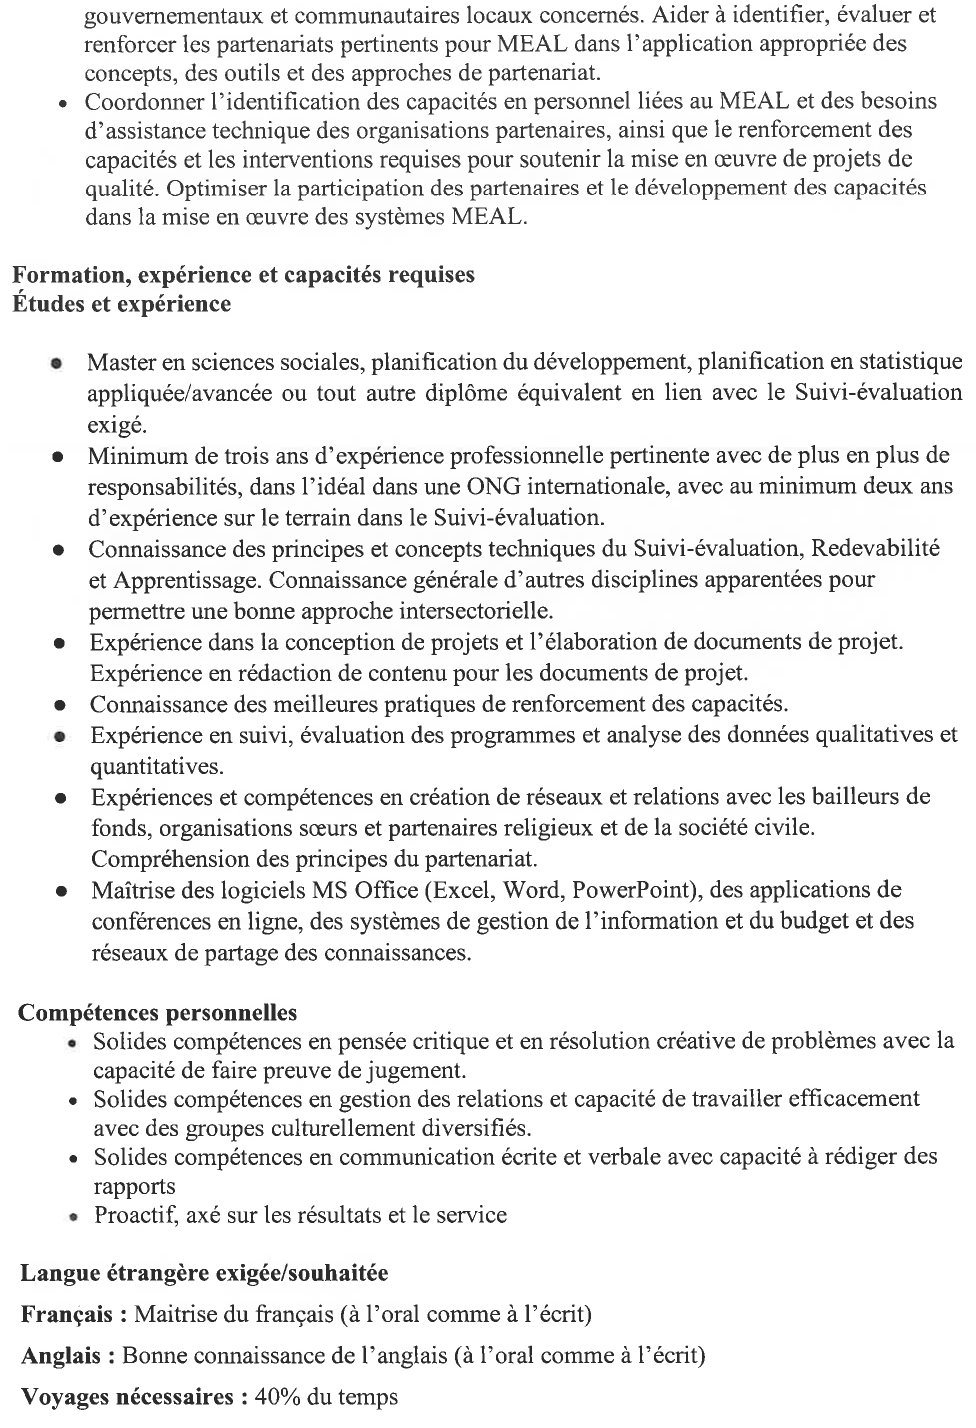 Gestionnaire de Projet Suivi-évaluation, Redevabilité et Apprentissage | page 3